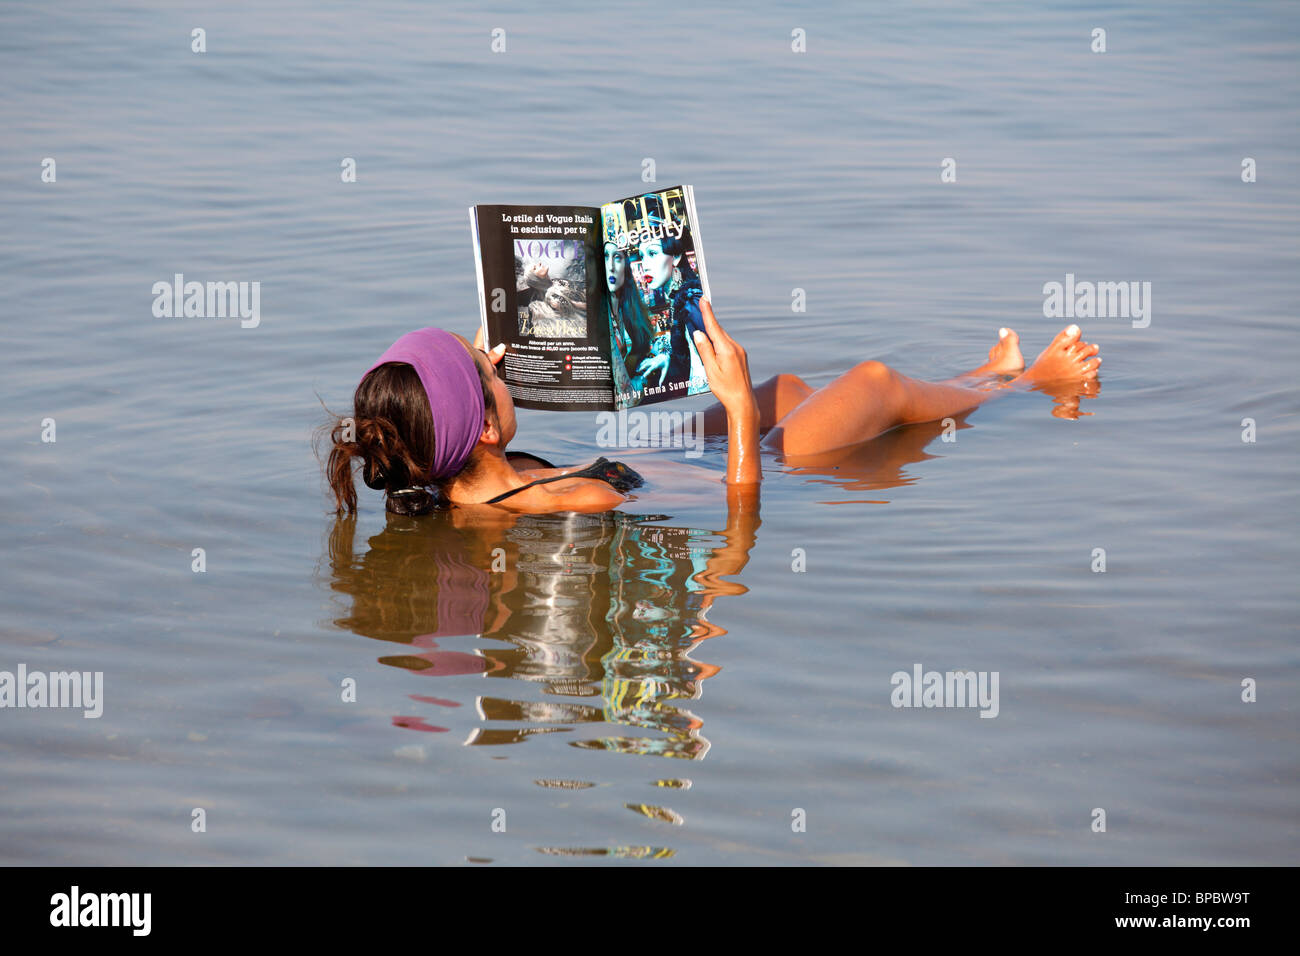 Jeune femme flottant et la lecture d'un magazine dans la mer Morte, Jordanie Banque D'Images